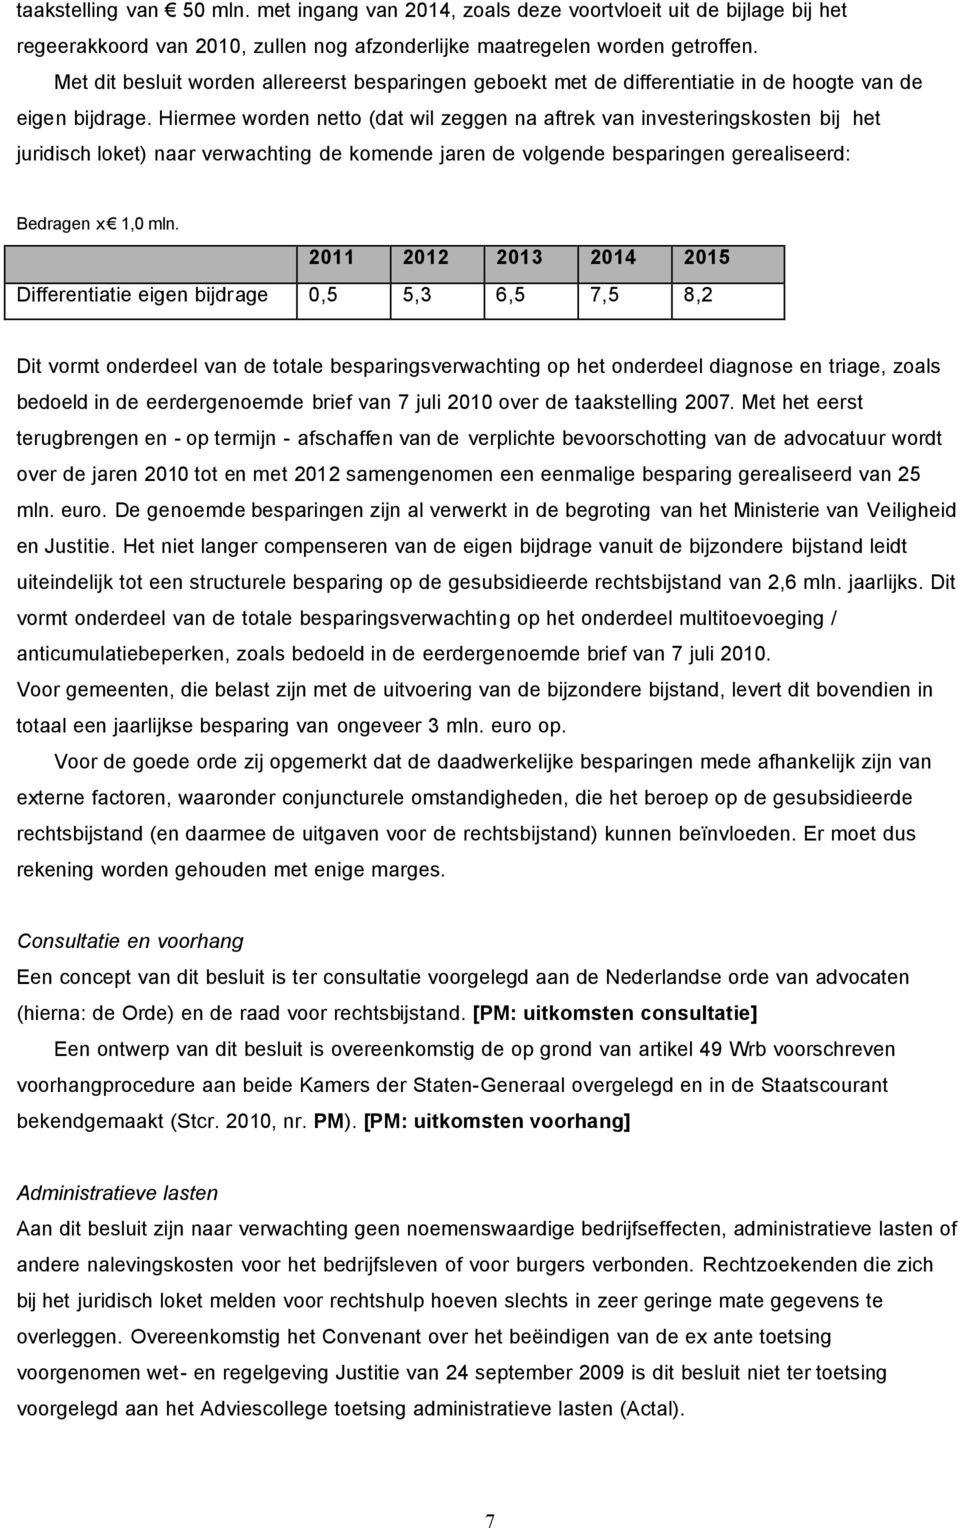 Hiermee worden netto (dat wil zeggen na aftrek van investeringskosten bij het juridisch loket) naar verwachting de komende jaren de volgende besparingen gerealiseerd: Bedragen x 1,0 mln.